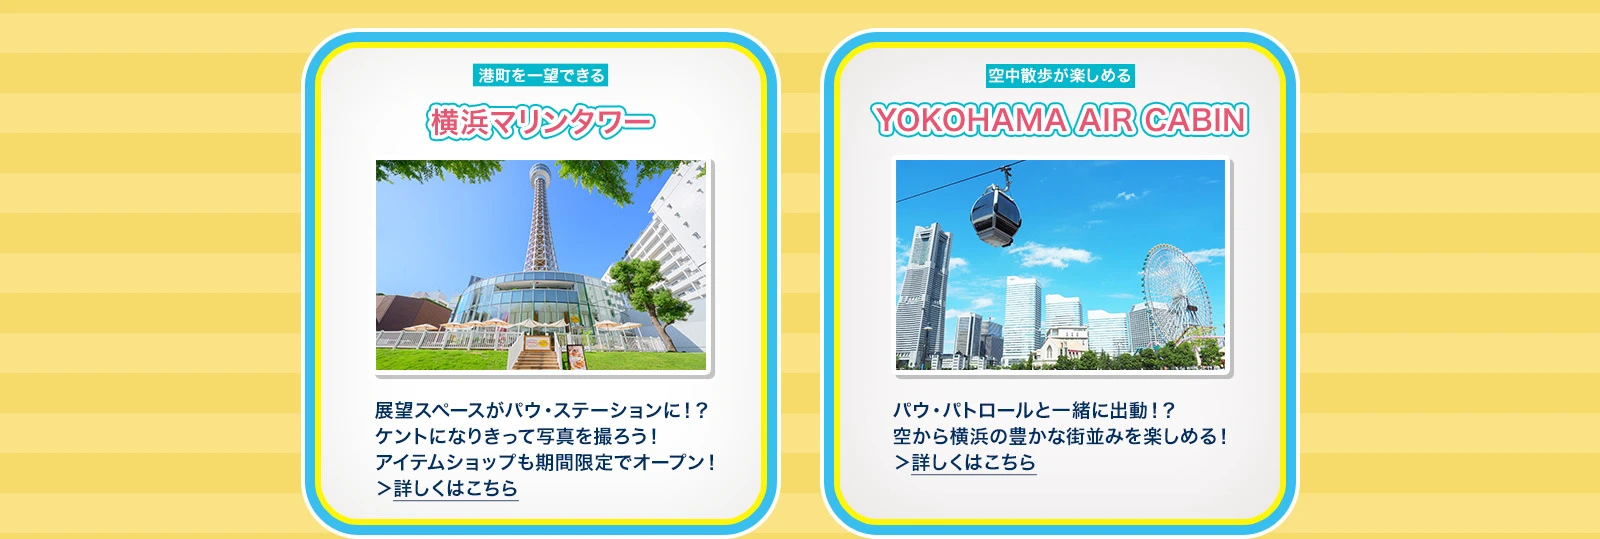 横浜マリンタワー：展望スペースがパウ・ステーションに！？ケントになりきって写真を撮ろう！アイテムショップも期間限定でオープン！ YOKOHAMA AIR CABIN：パウ・パトロールと一緒に出動！？空から横浜の豊かな街並みを楽しめる！